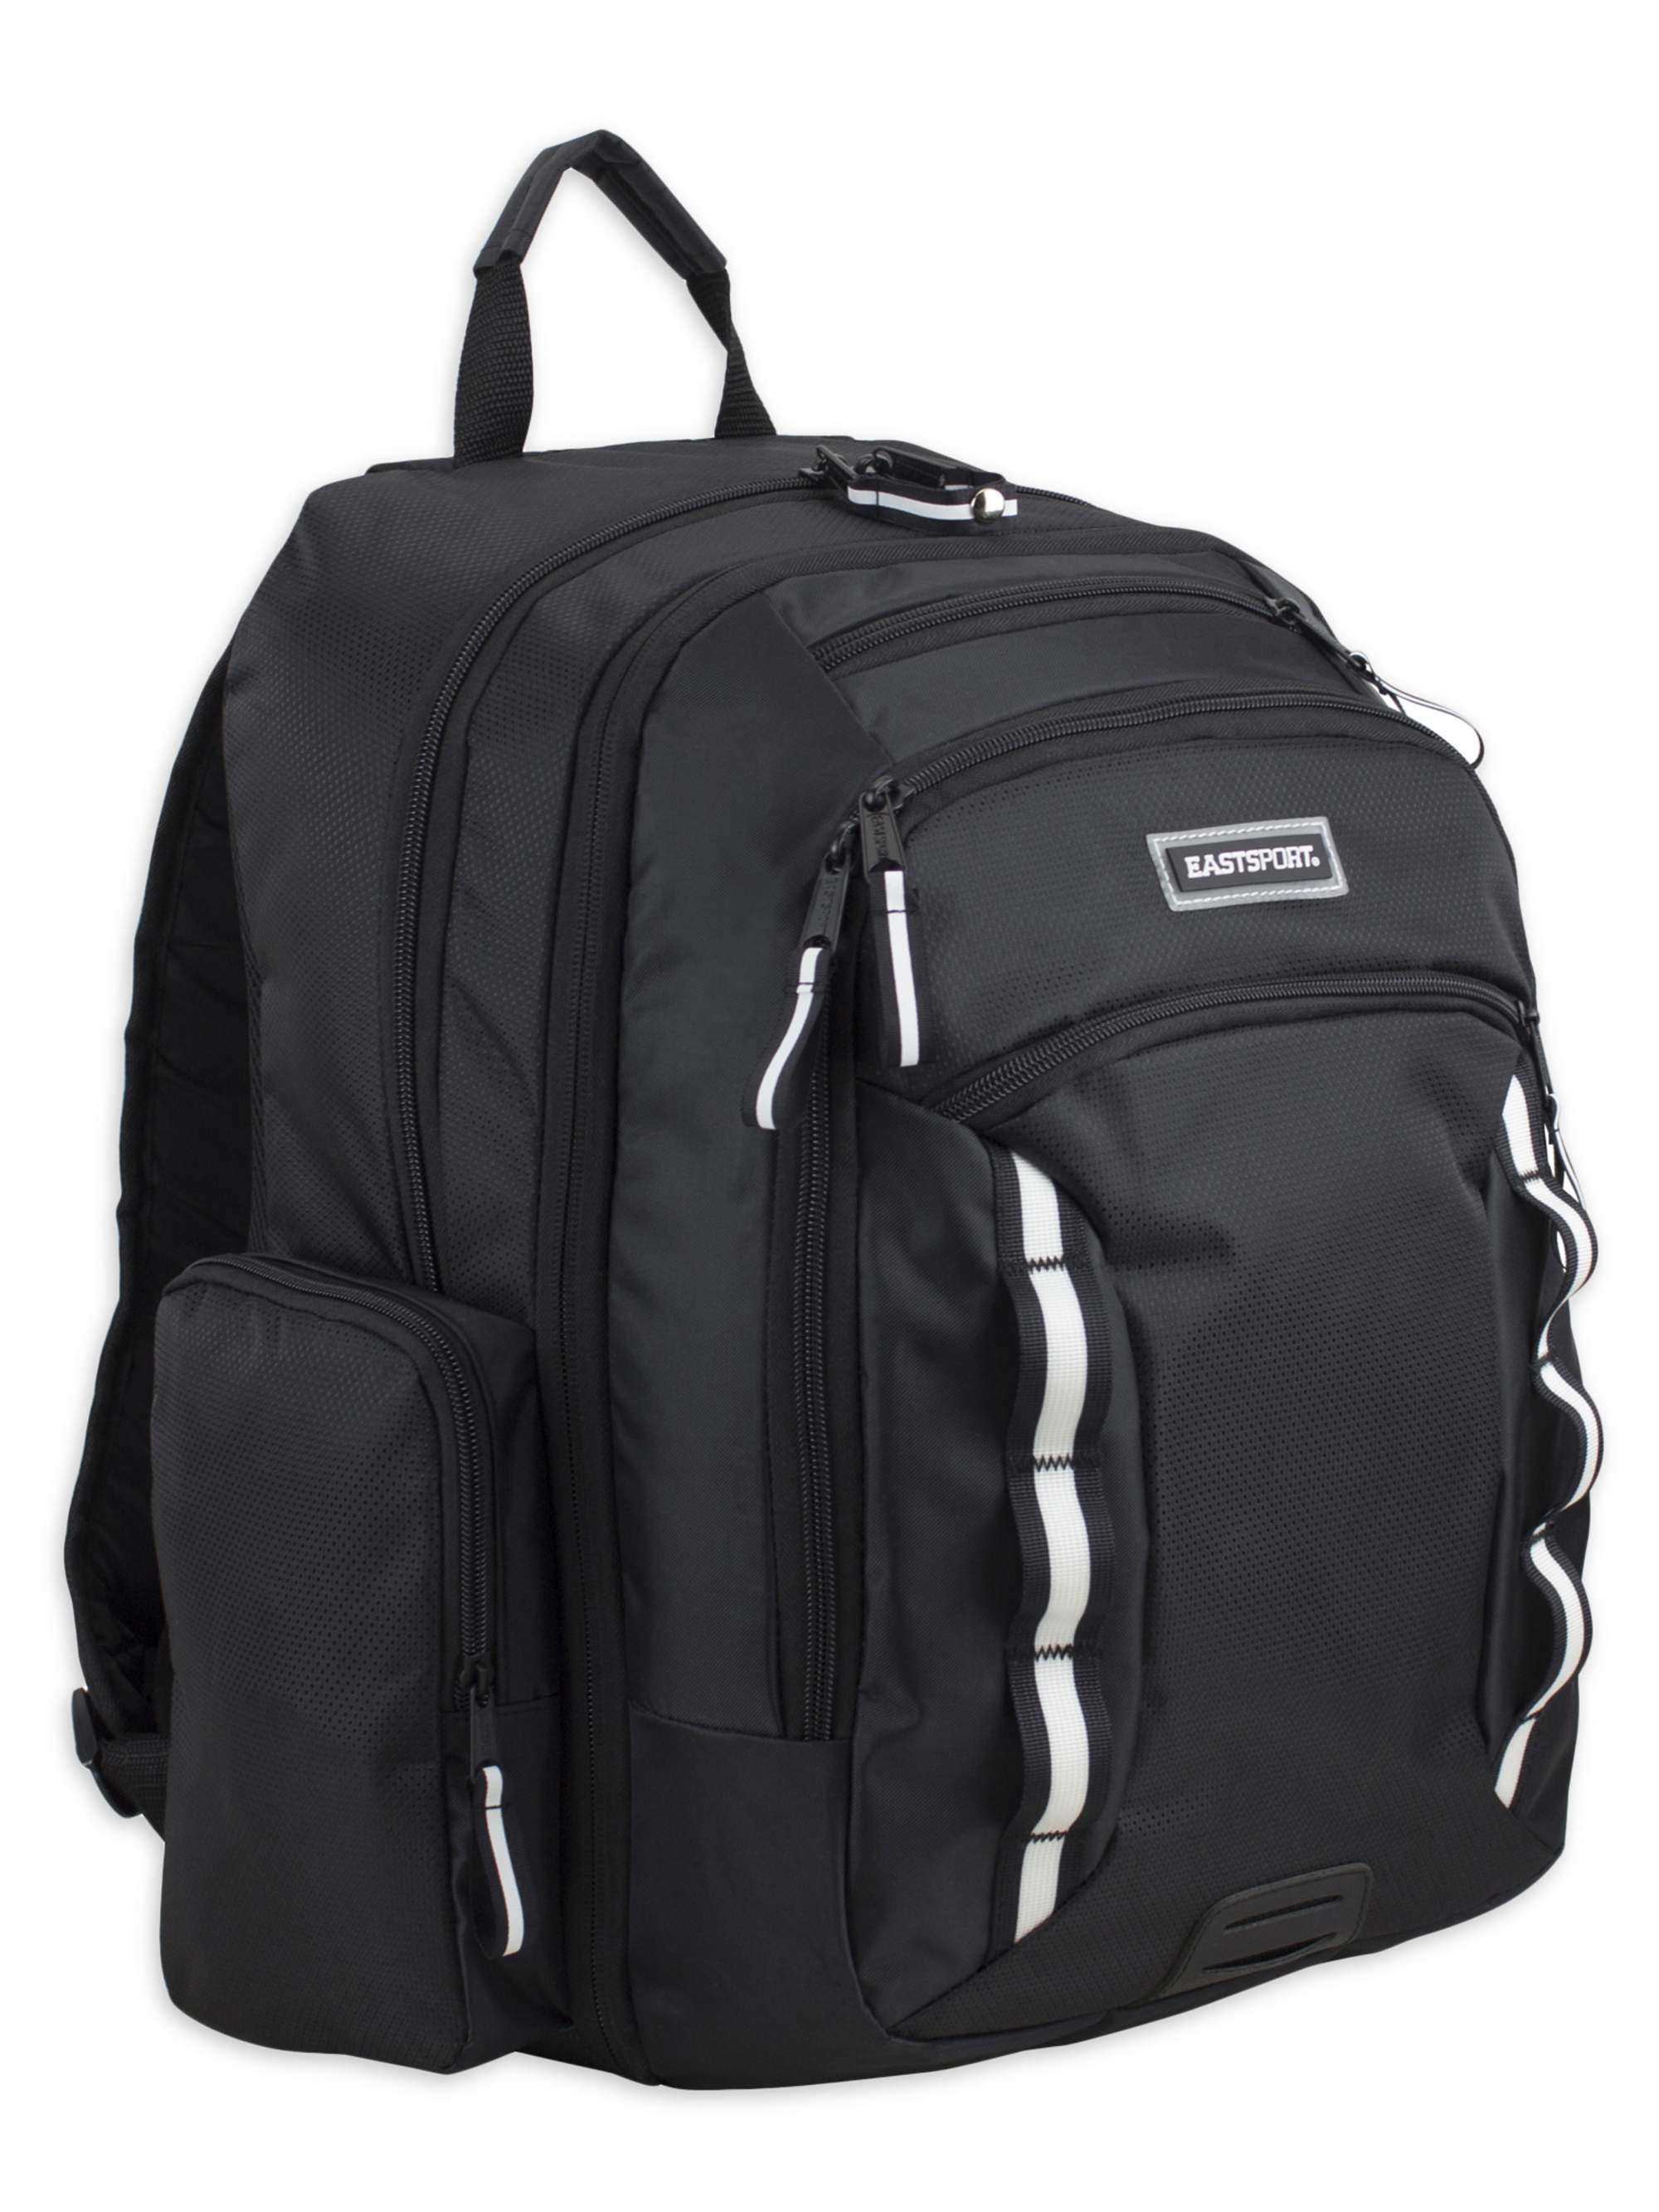 Eastsport Odyssey Backpack, Black - image 4 of 7